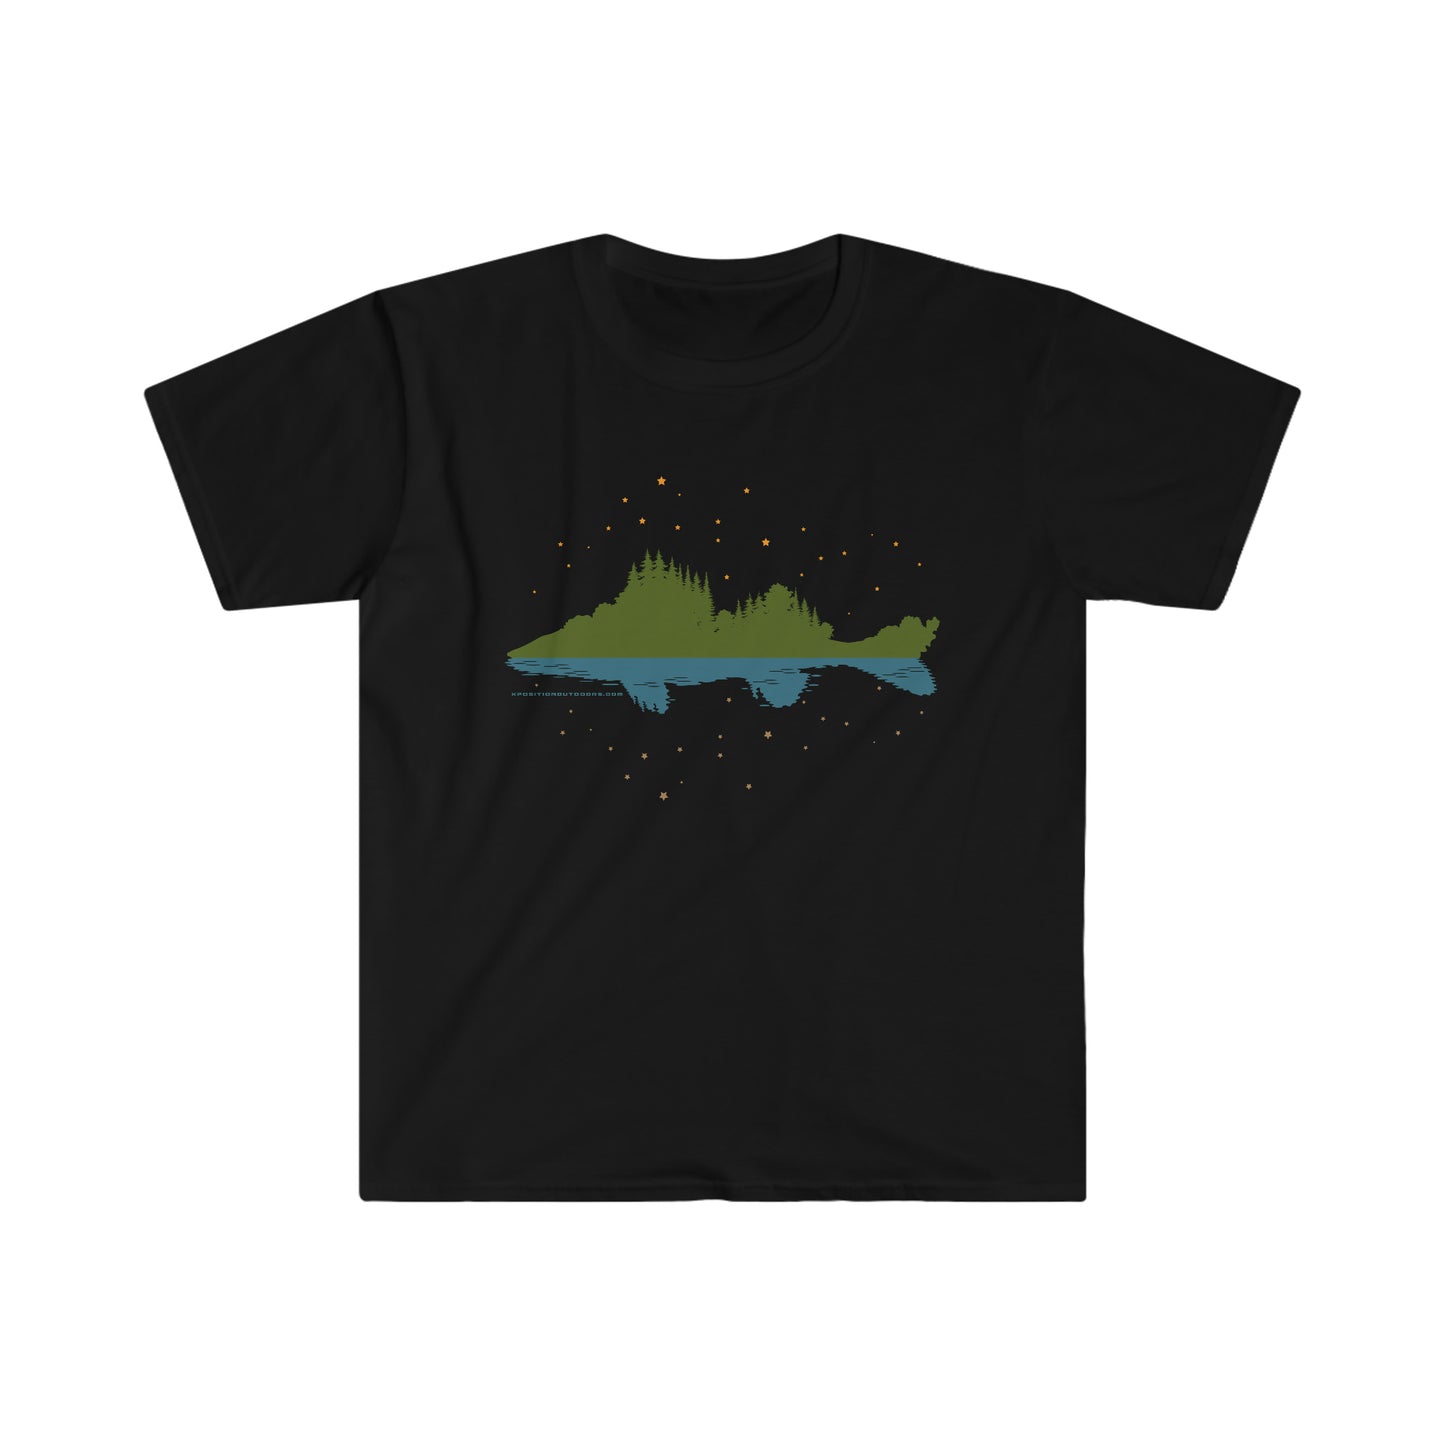 Walleye Fishing T-Shirt